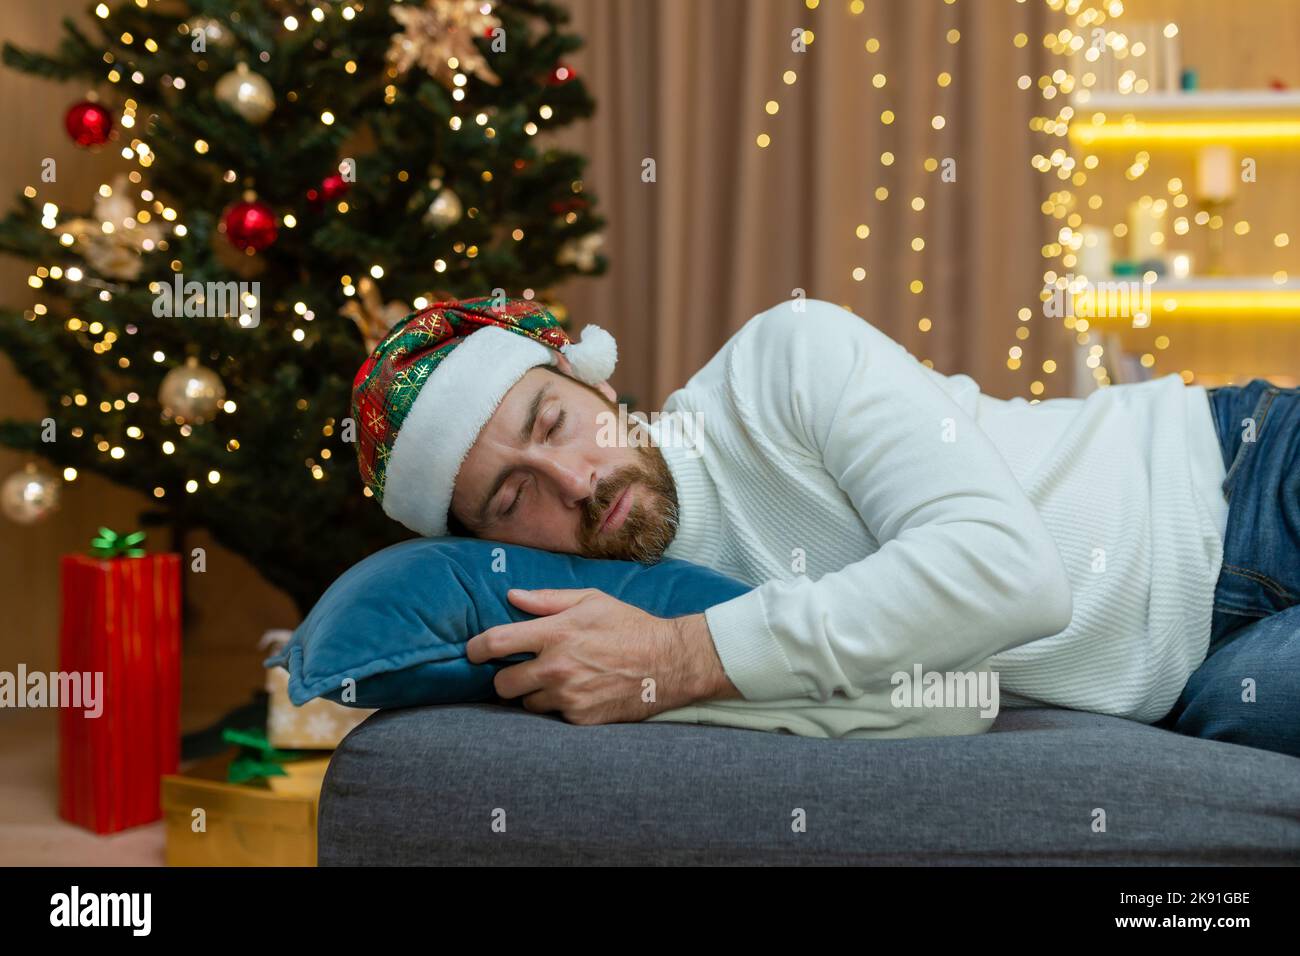 Un homme est fatigué pour Noël, portant un chapeau du nouvel an, dormant près de l'arbre de Noël, assis sur le canapé à la maison dans le salon après avoir fêté Noël. Banque D'Images